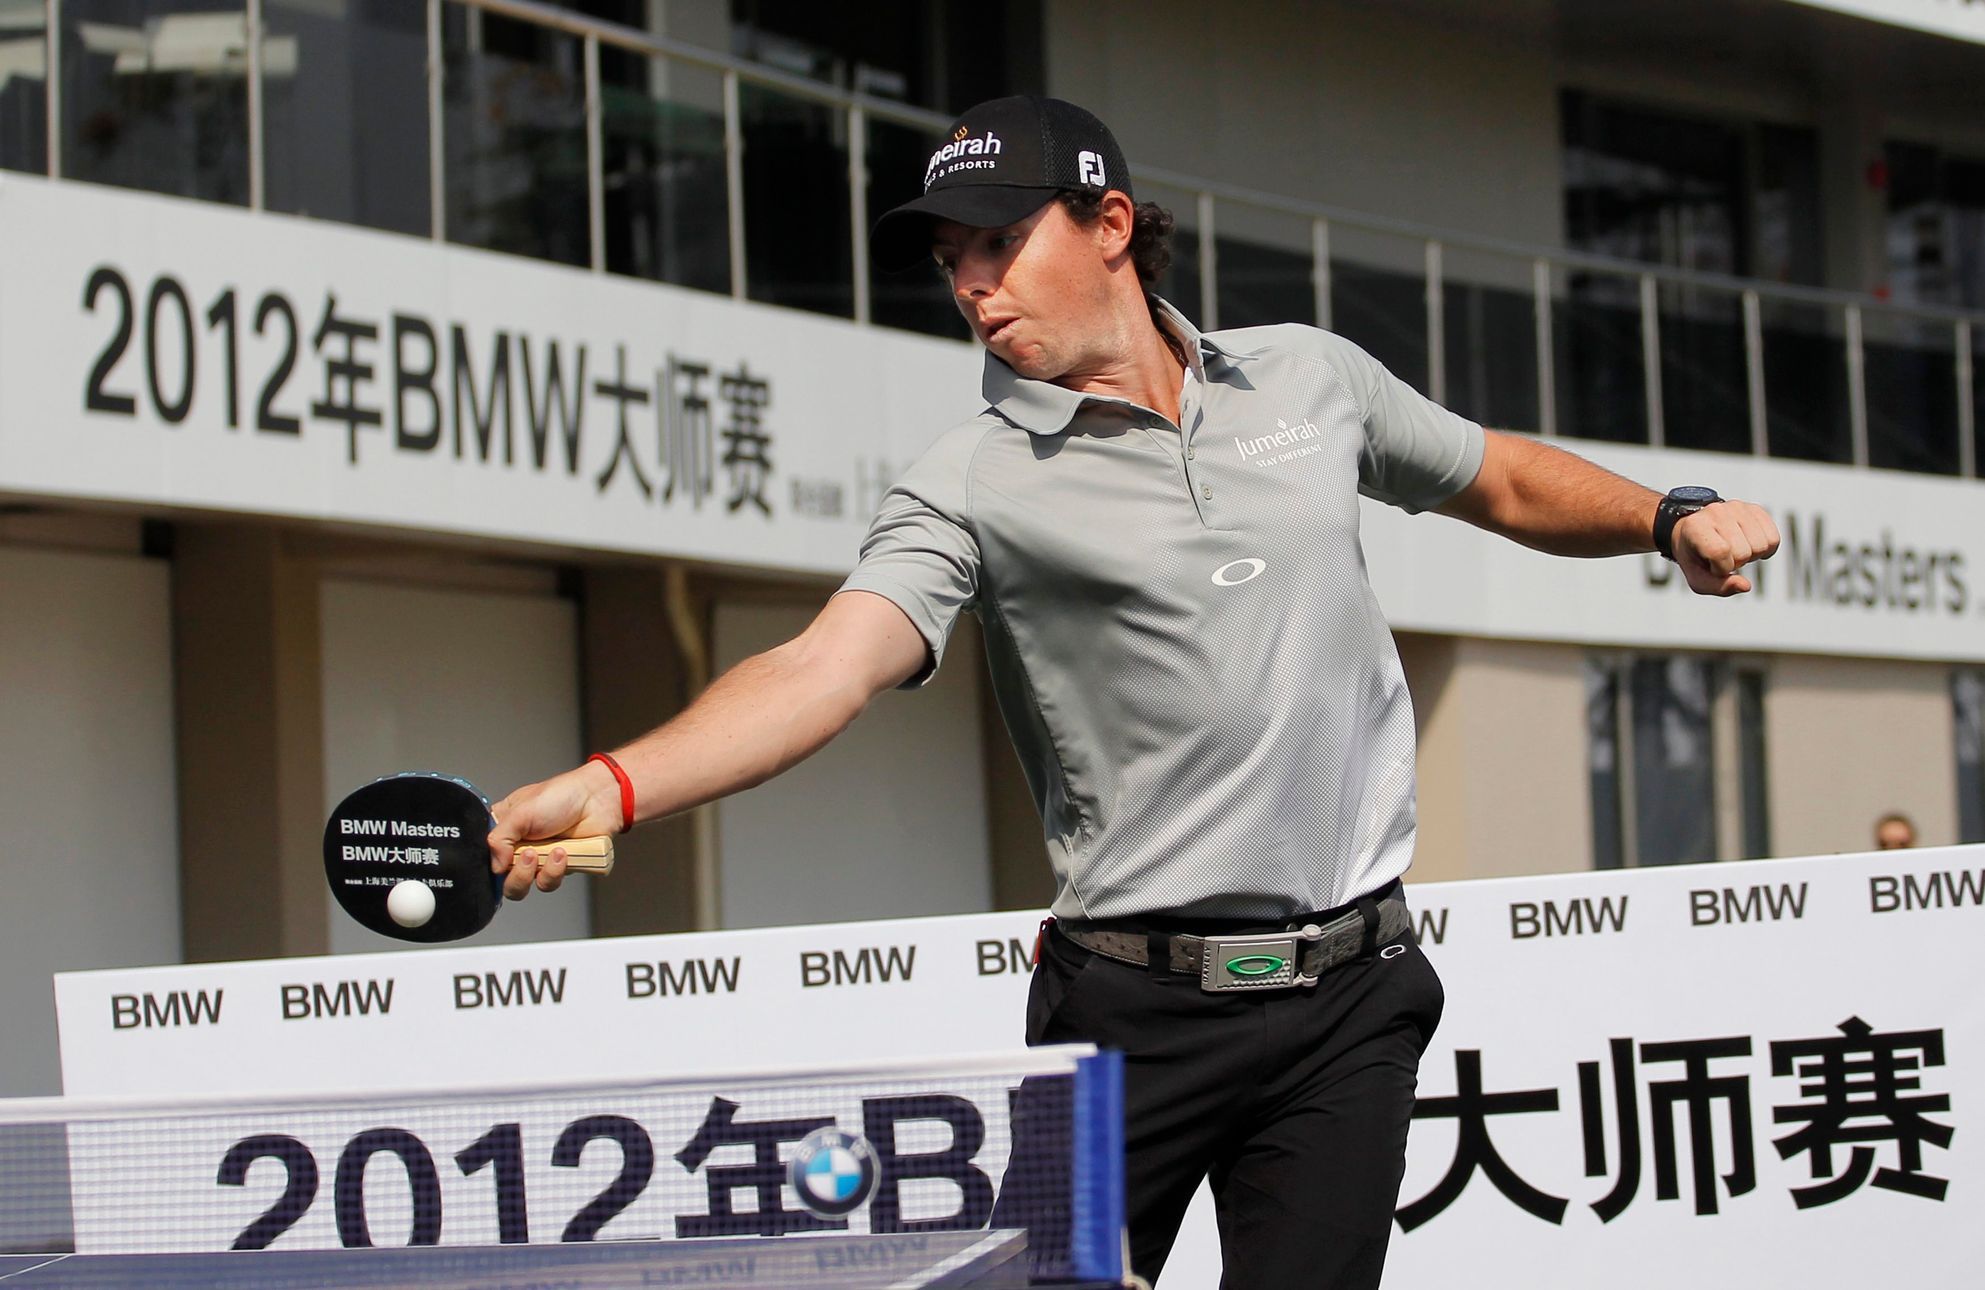 Golfový turnaj European Tour BMW Masters v Šanghaji, Rory McIlroy